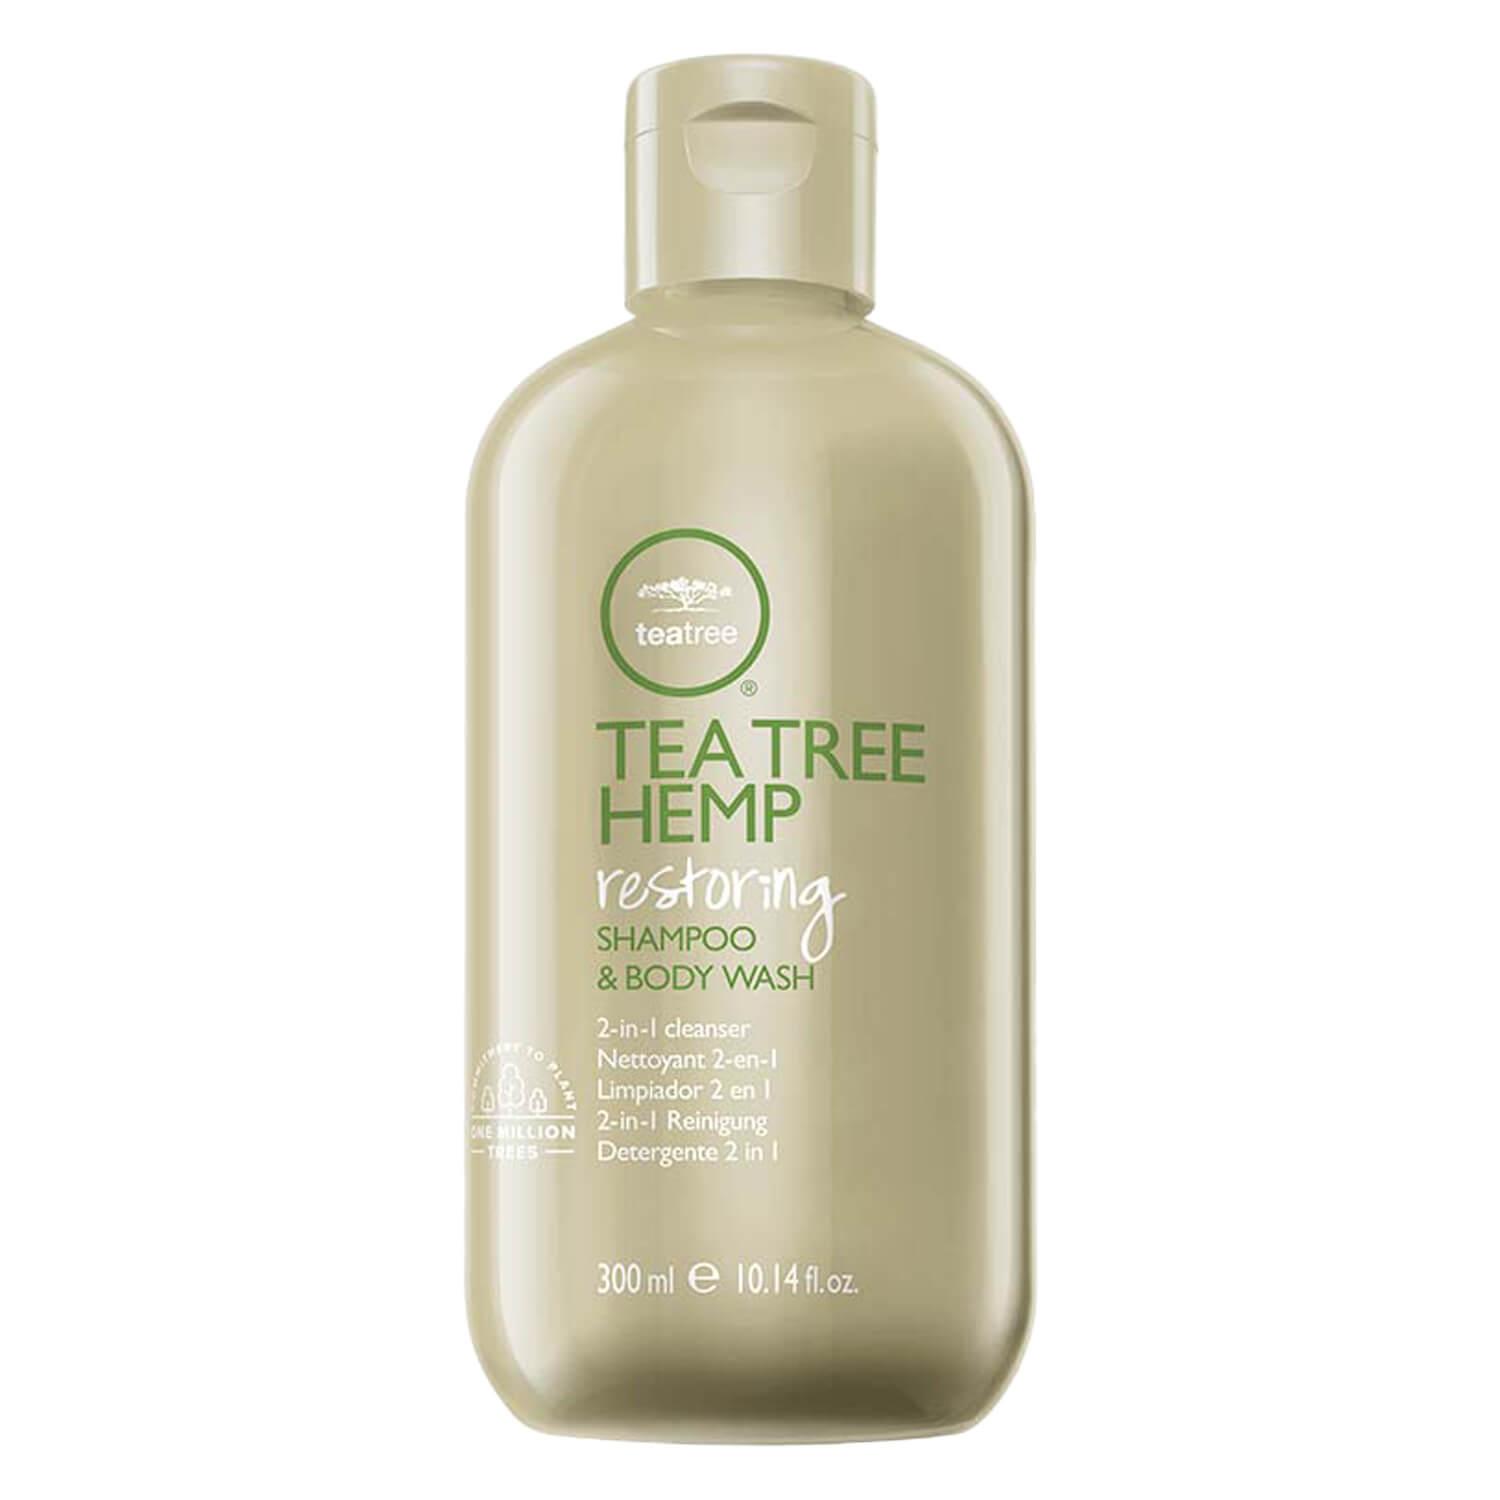 Tea Tree Hemp - Shampoo and Body Wash